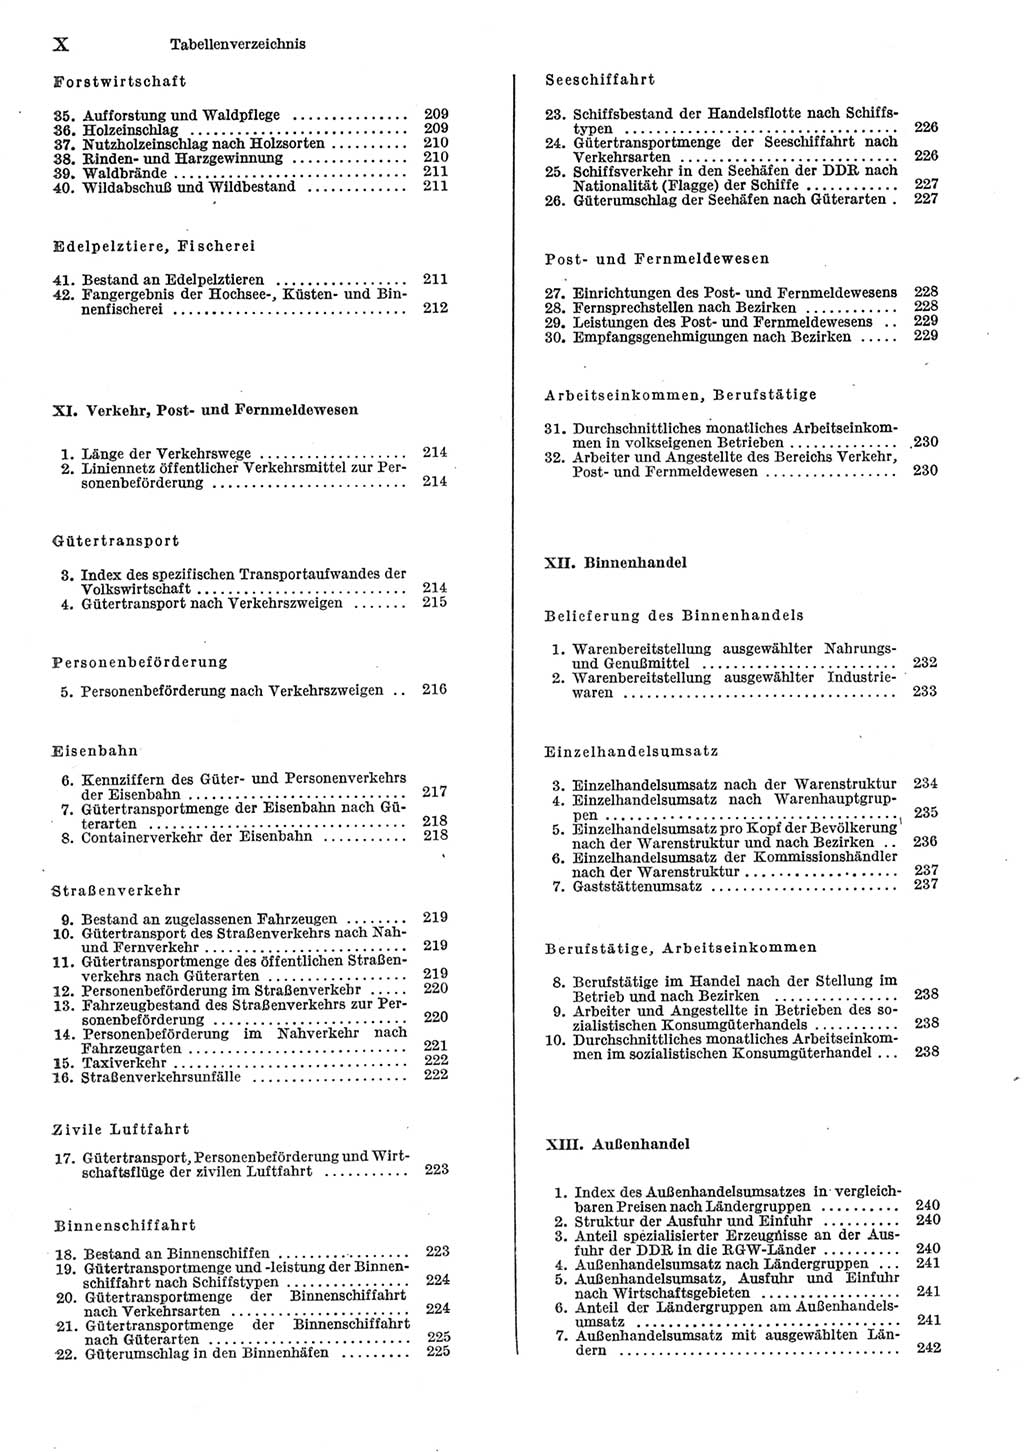 Statistisches Jahrbuch der Deutschen Demokratischen Republik (DDR) 1985, Seite 10 (Stat. Jb. DDR 1985, S. 10)